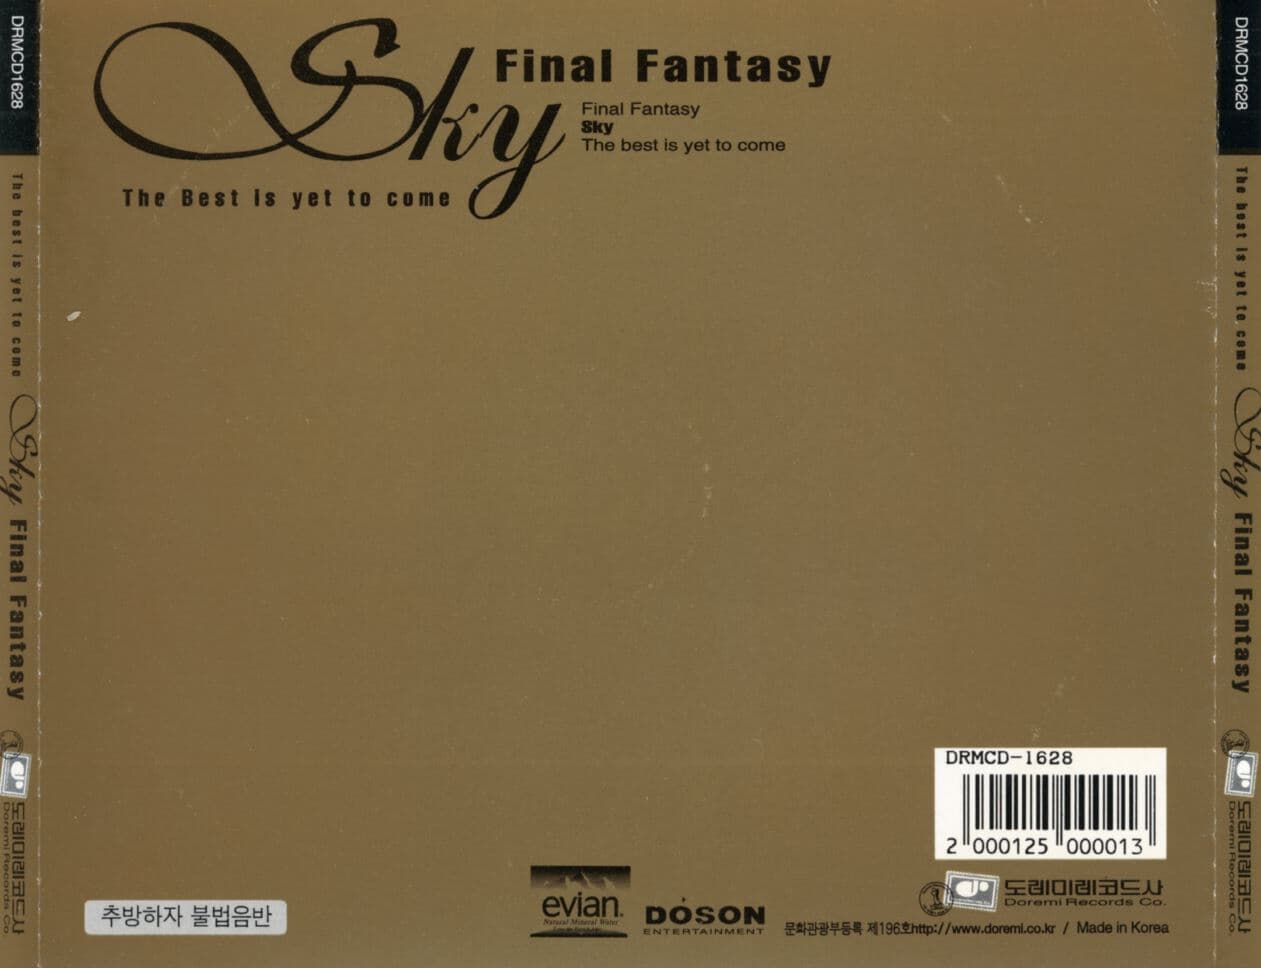 스카이 1집 - Final Fantasy